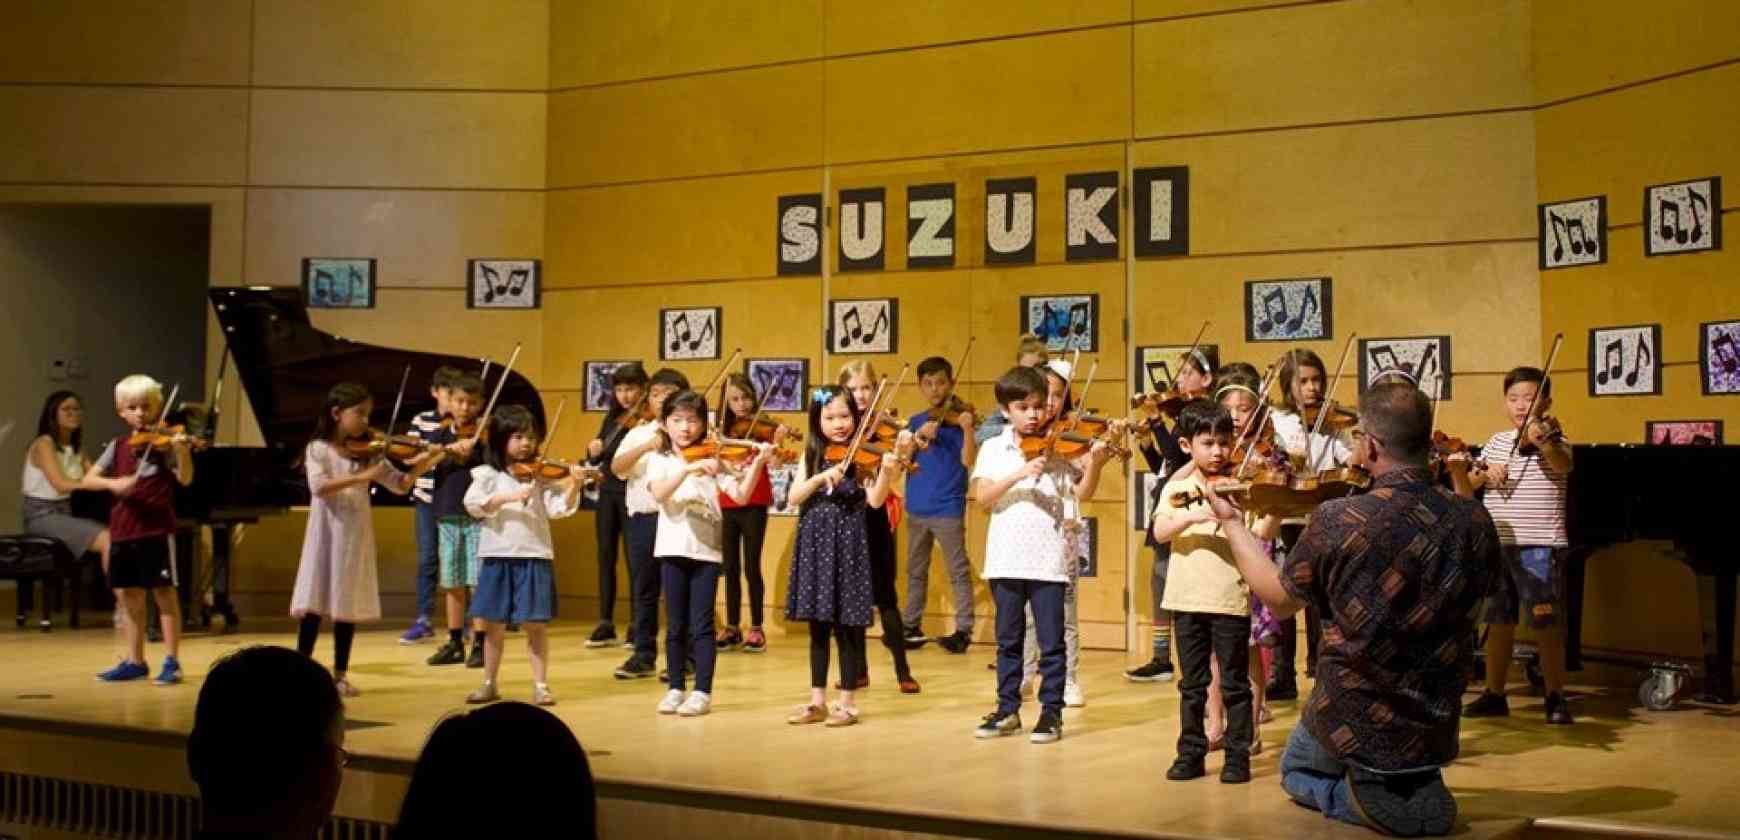 Langley Community Music School Suzuki Workshop